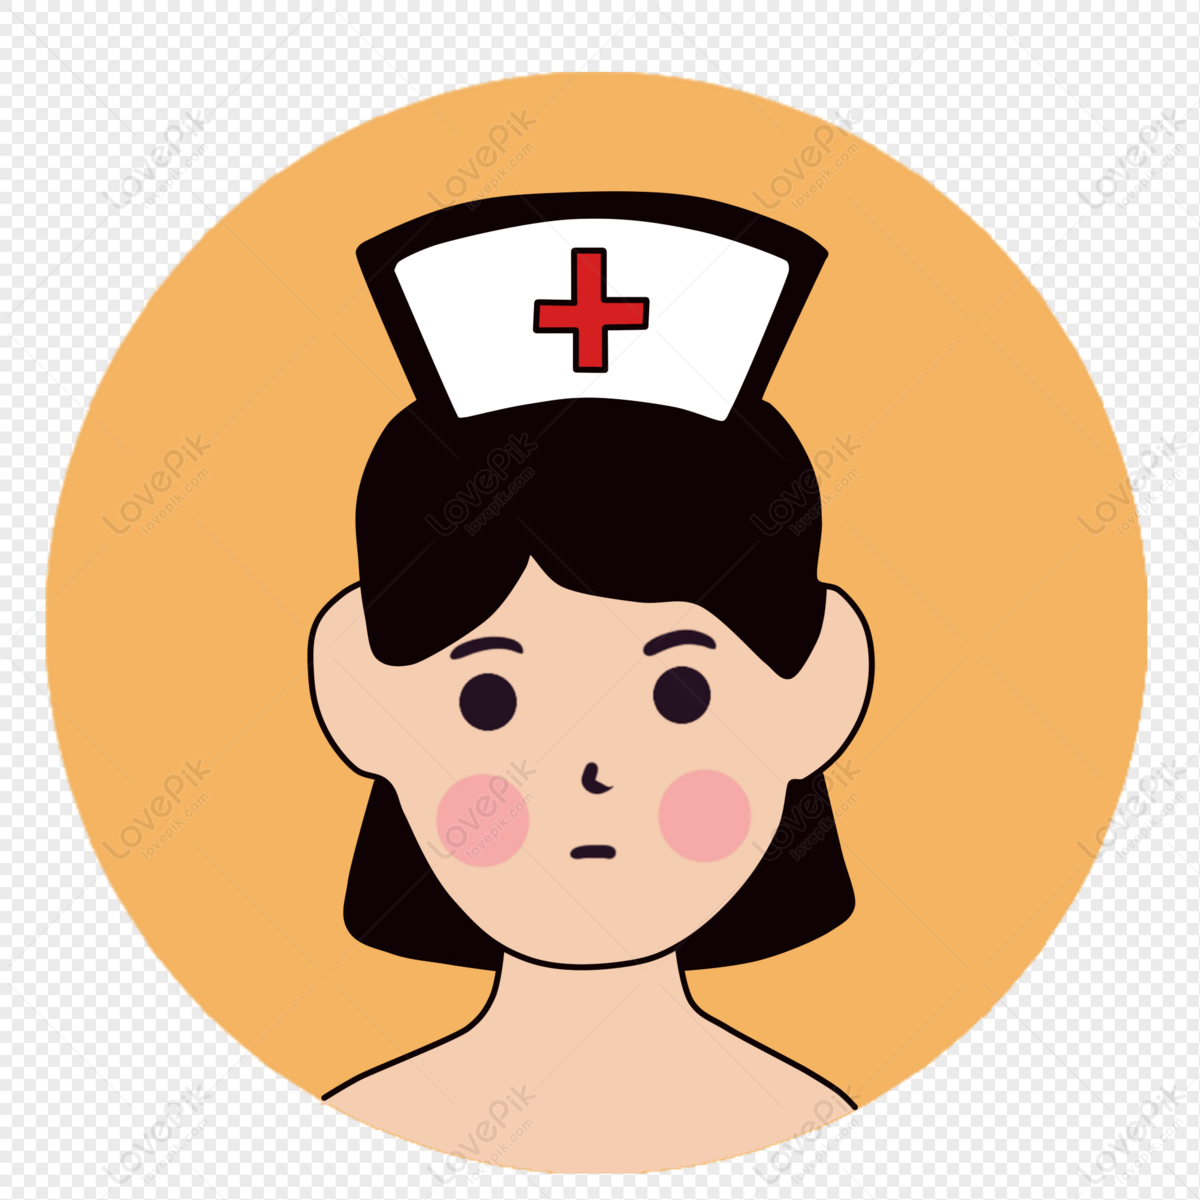 Ilustração Bonito Dos Desenhos Animados De Enfermeira PNG , Enfermeira  Fofa, Ilustração De Enfermeira, Enfermeira Dos Desenhos Animados Imagem PNG  e Vetor Para …